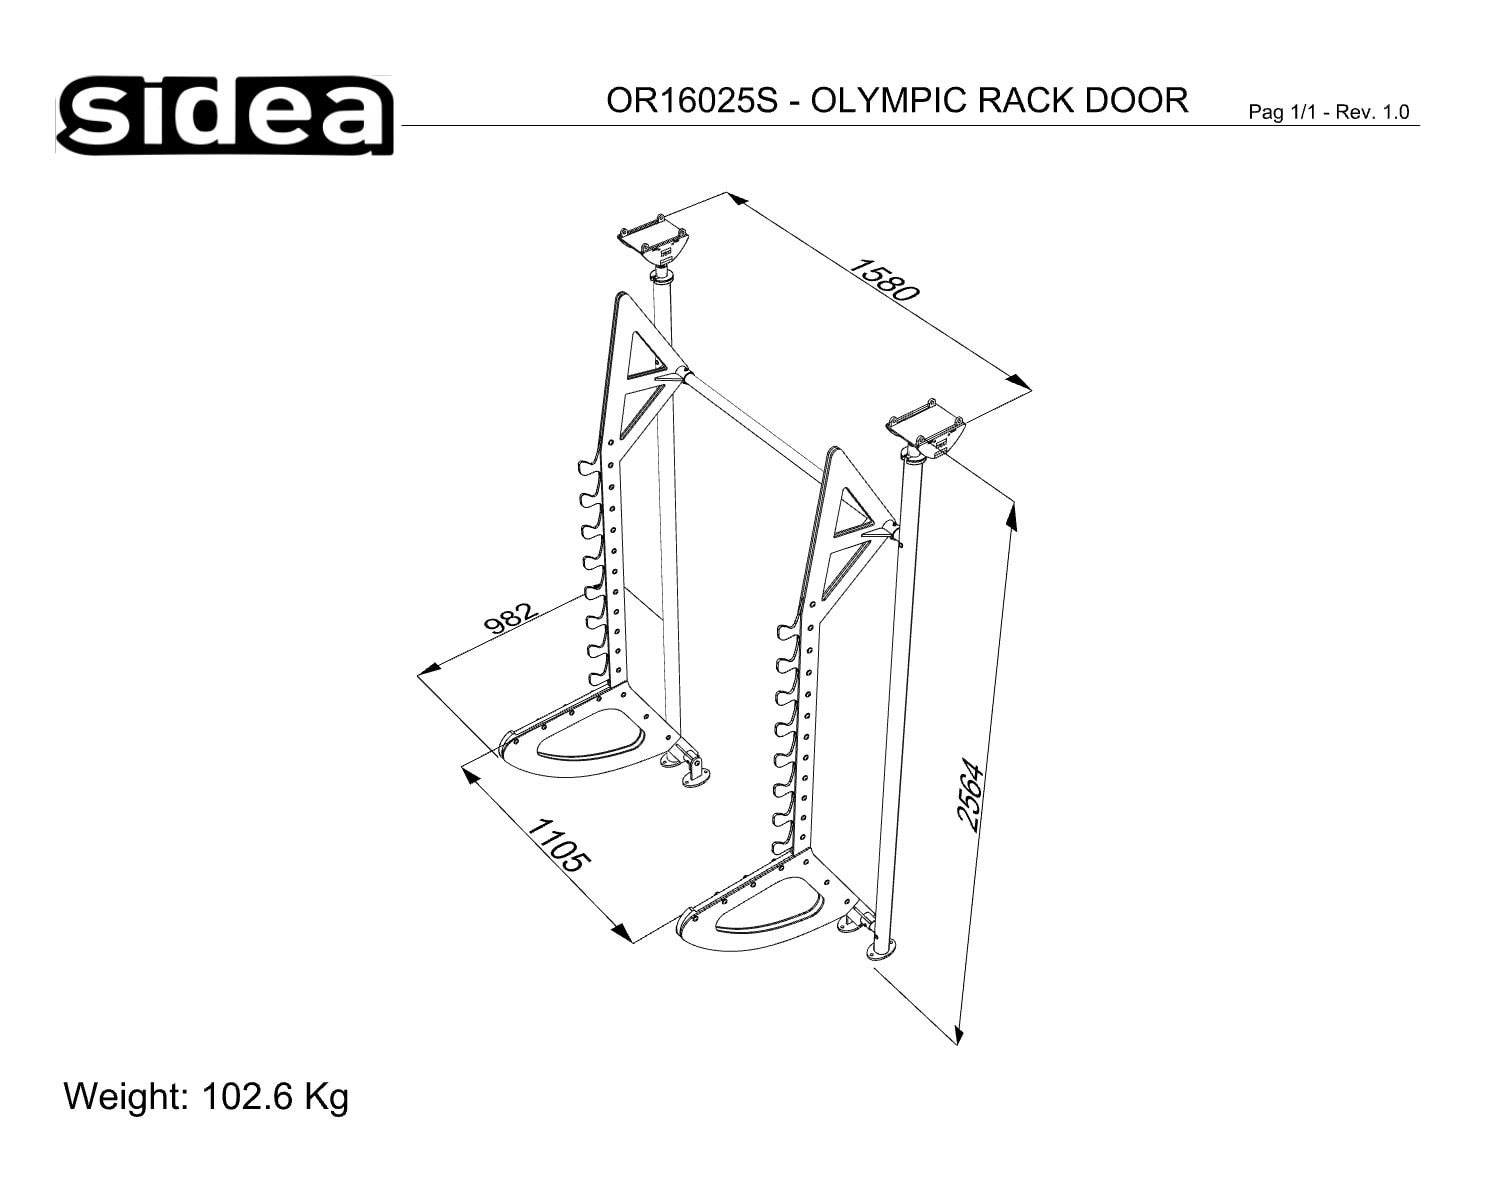 OR16025S - OLYMPIC RACK DOOR - QUOTE